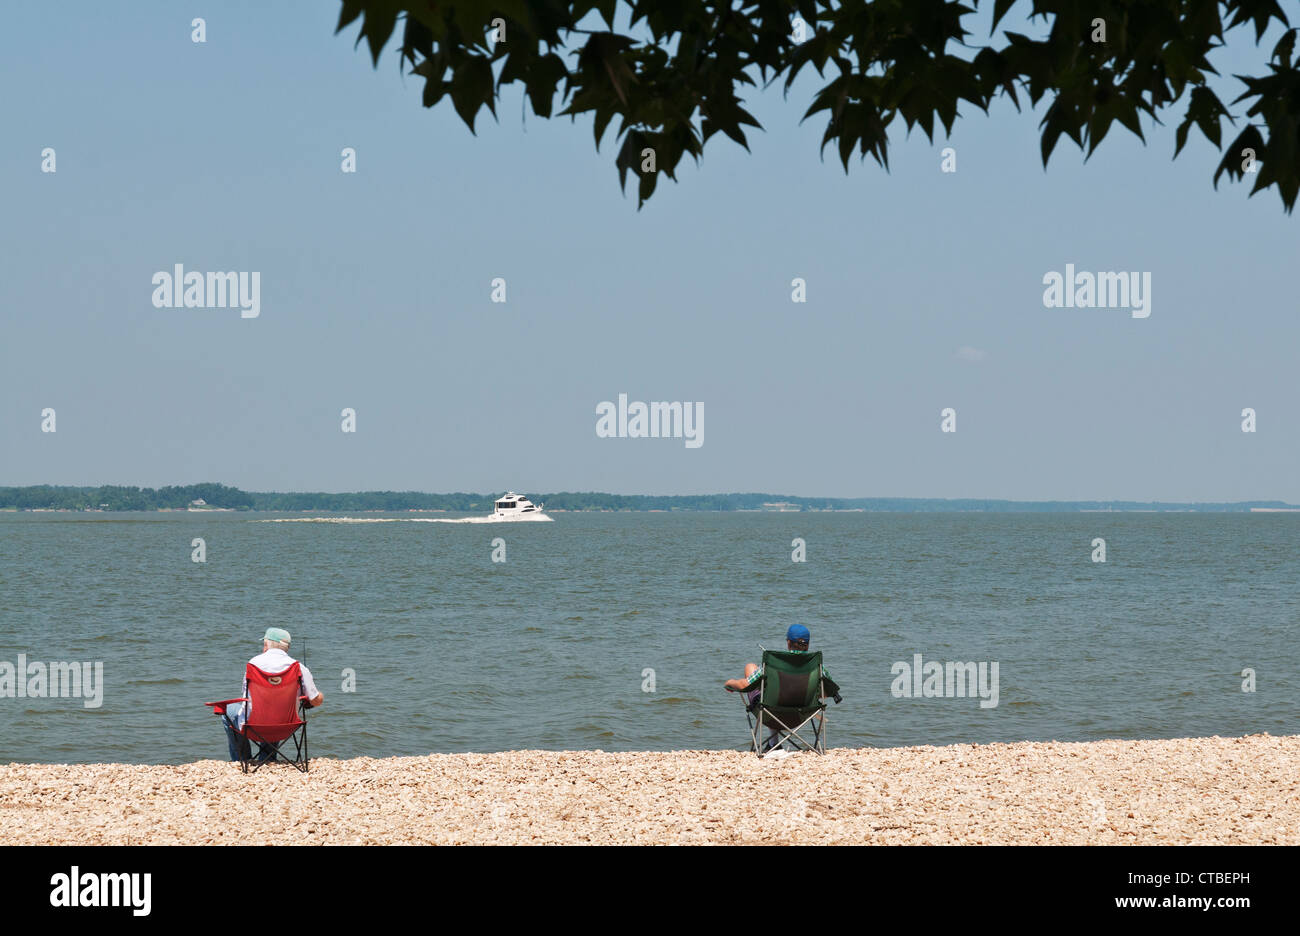 New York, terre entre les lacs National Recreation Area, les pêcheurs sur les rives du lac Michigan. Banque D'Images